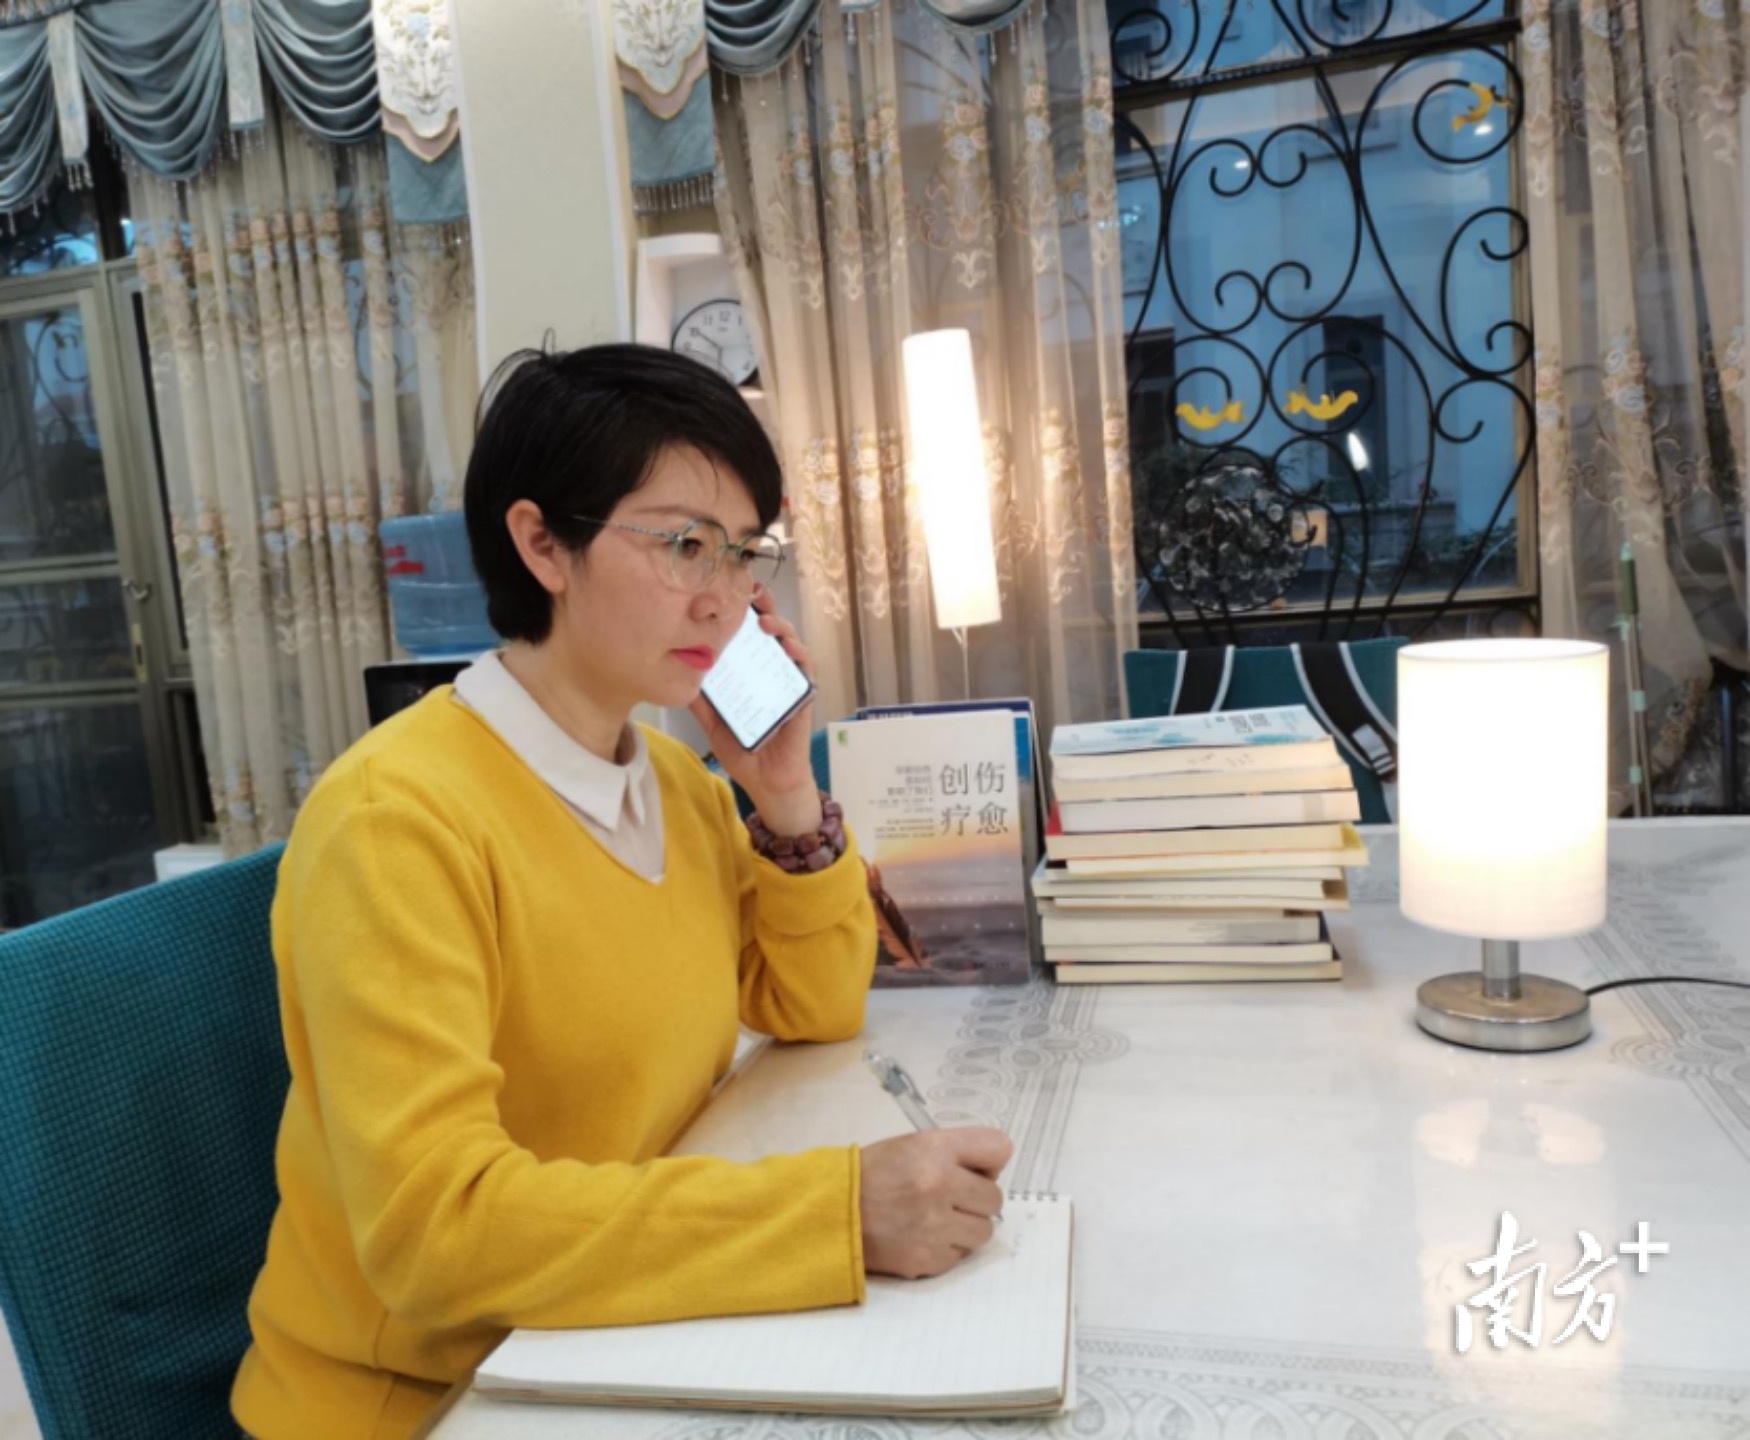 大朗镇综治中心心理咨询师王万吉正在进行服务。受访者供图。